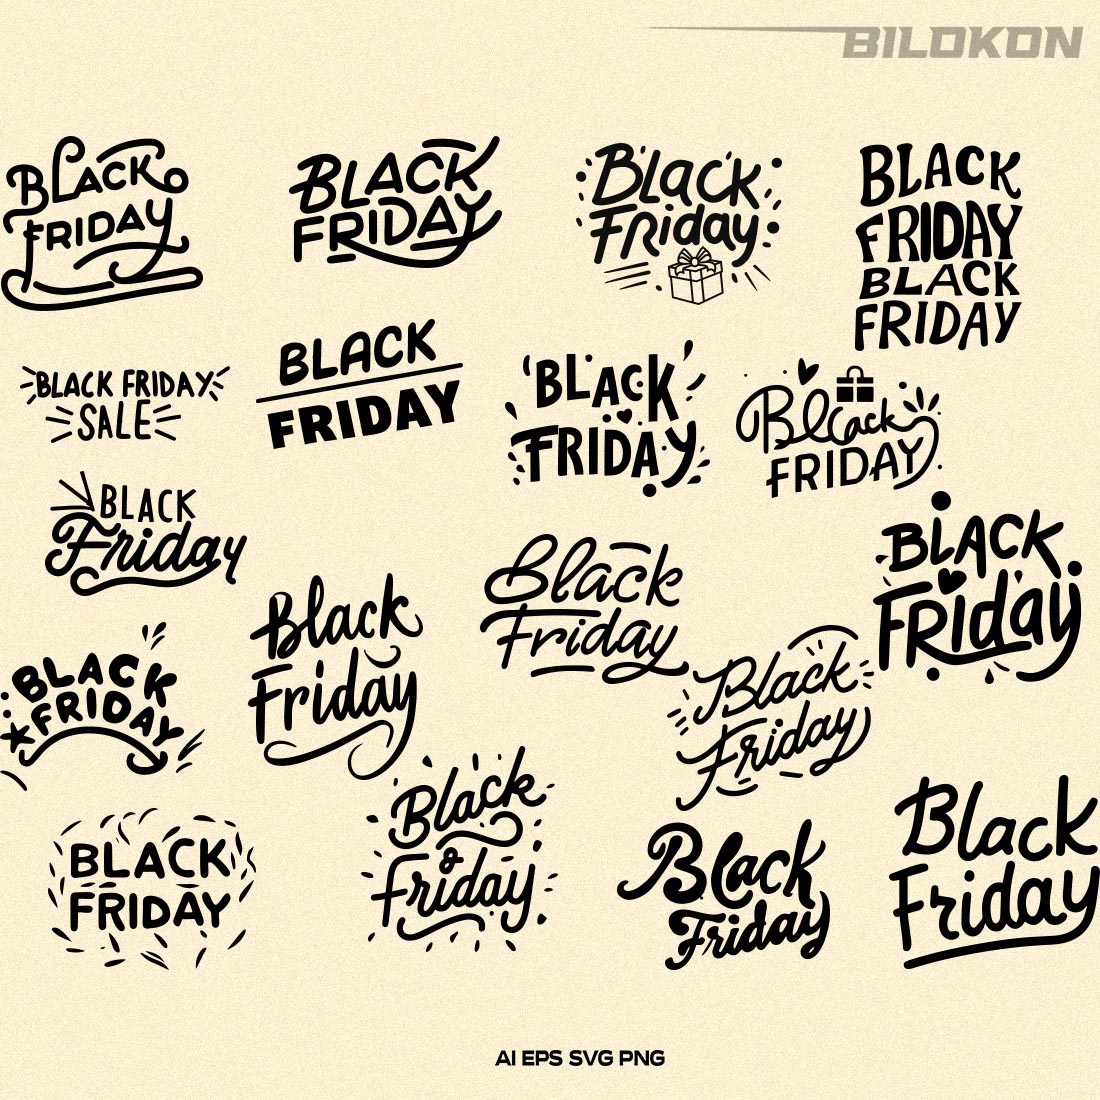 Black Friday SVG Bundle 18 File, Black Friday Sale Vector cover image.